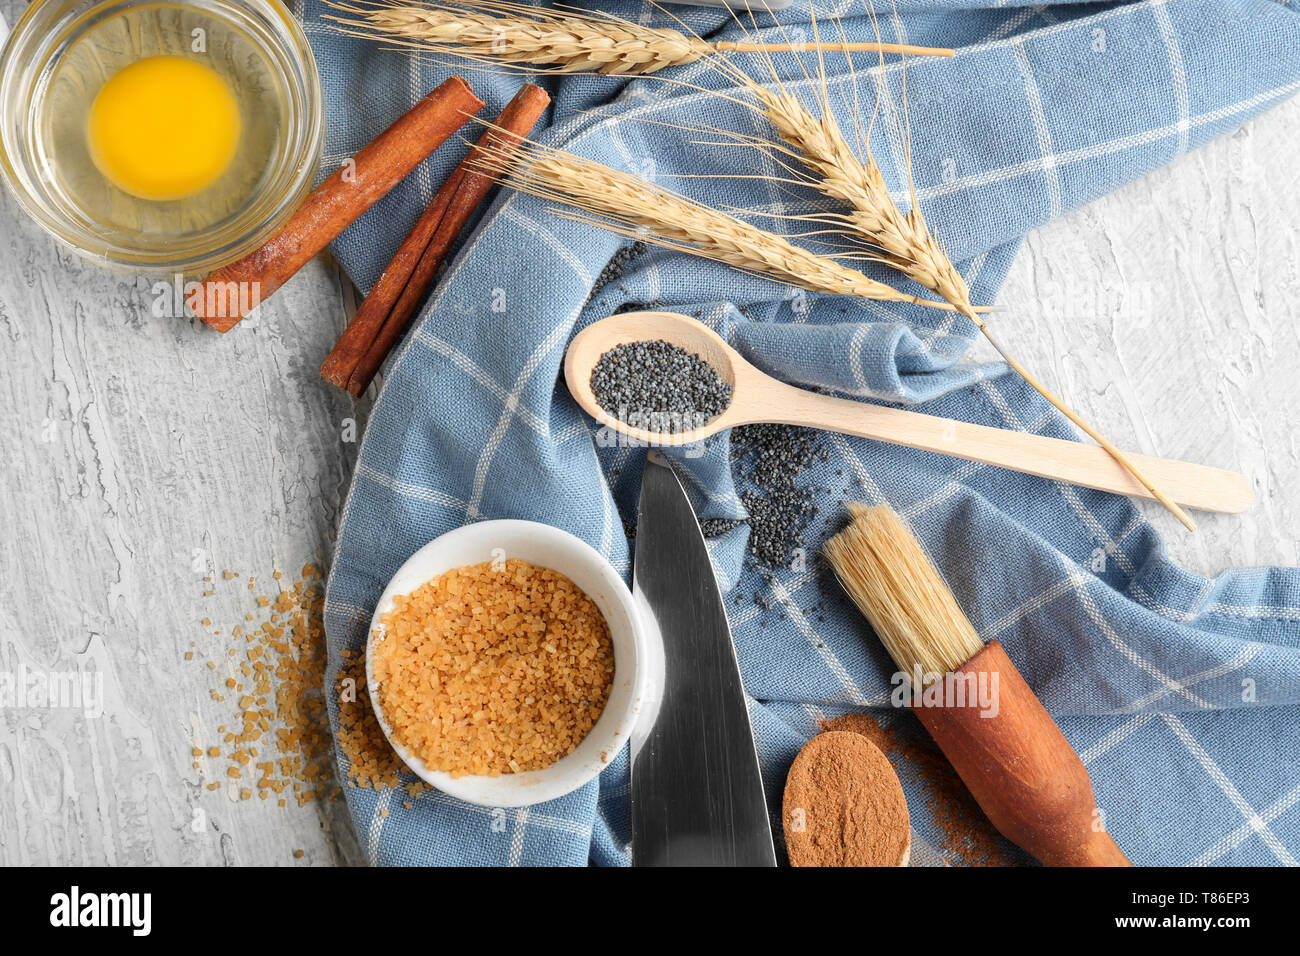 Ingrédients pour la préparation de boulangerie sur table en bois Banque D'Images